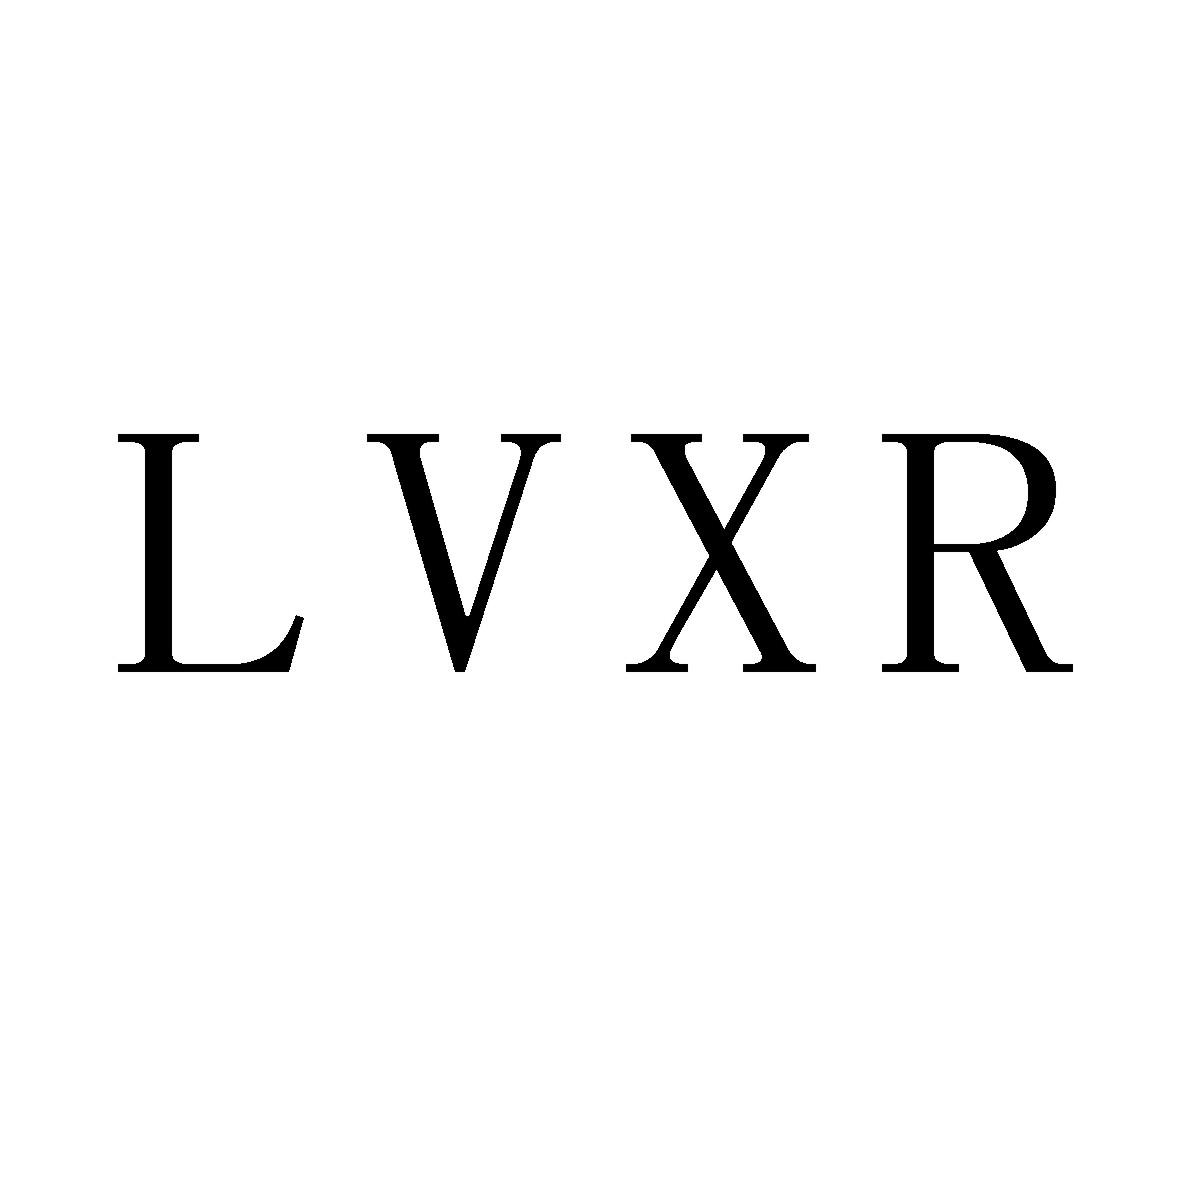 LVXR